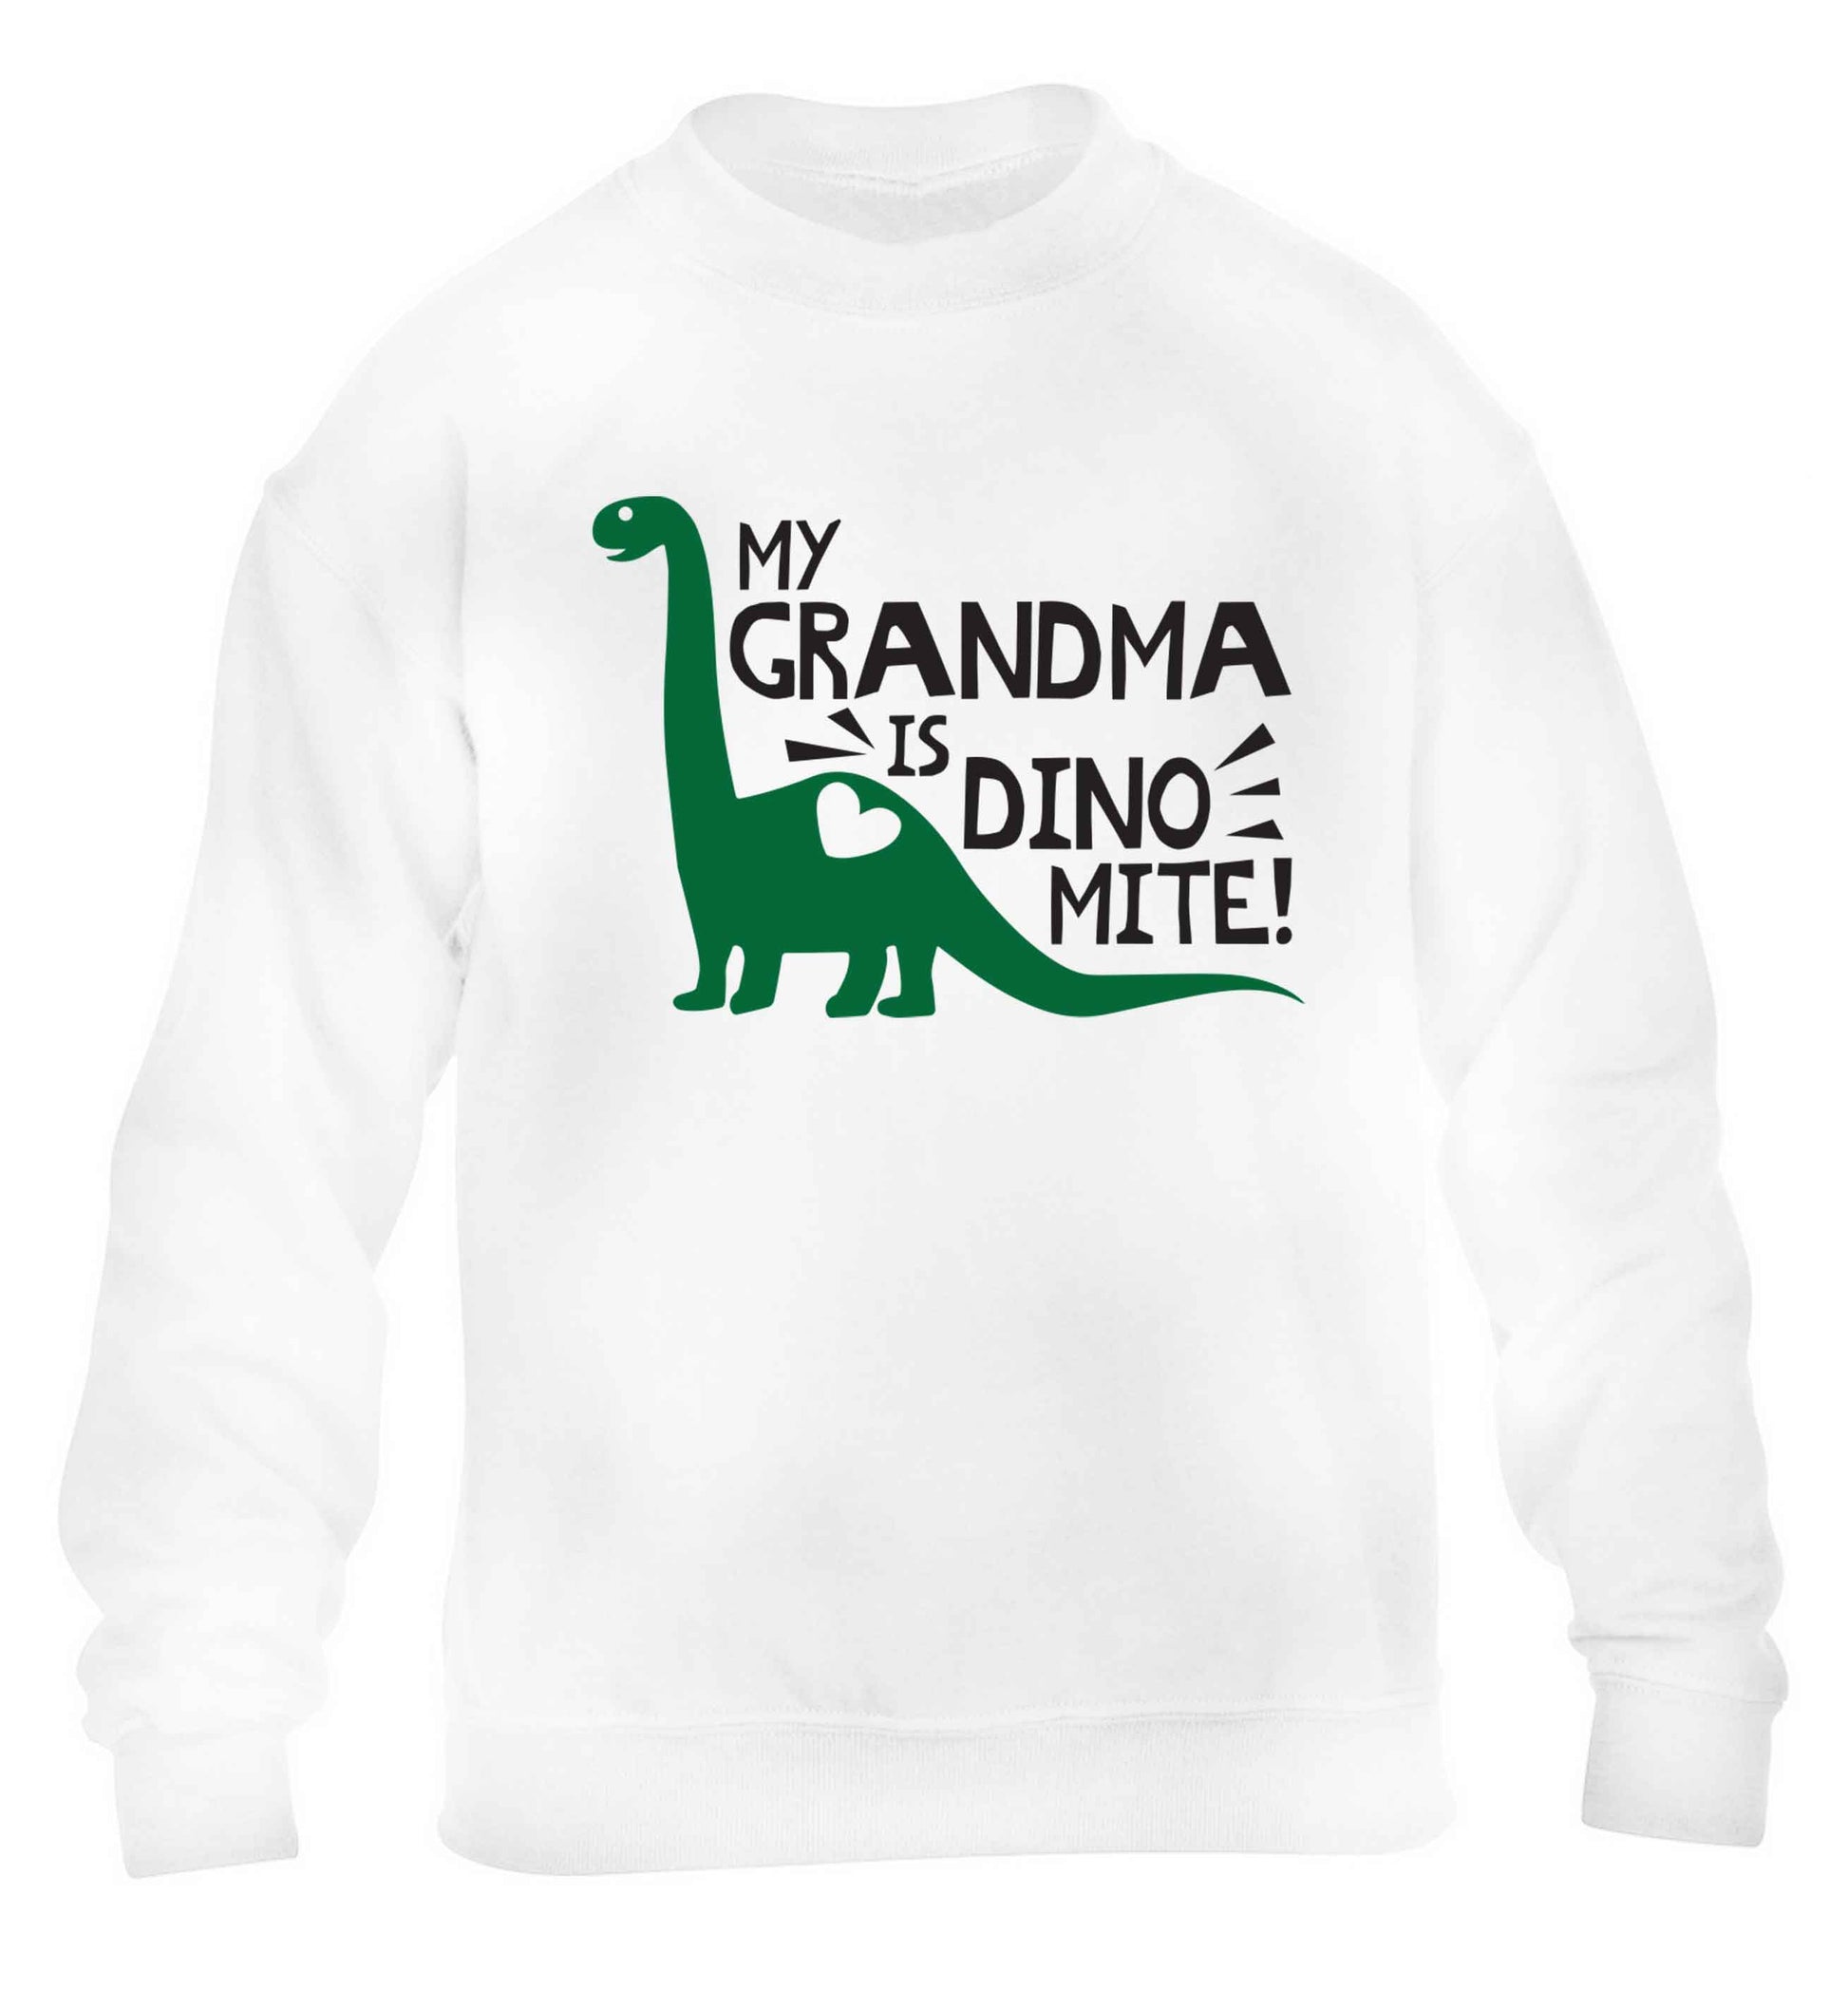 My grandma is dinomite! children's white sweater 12-13 Years